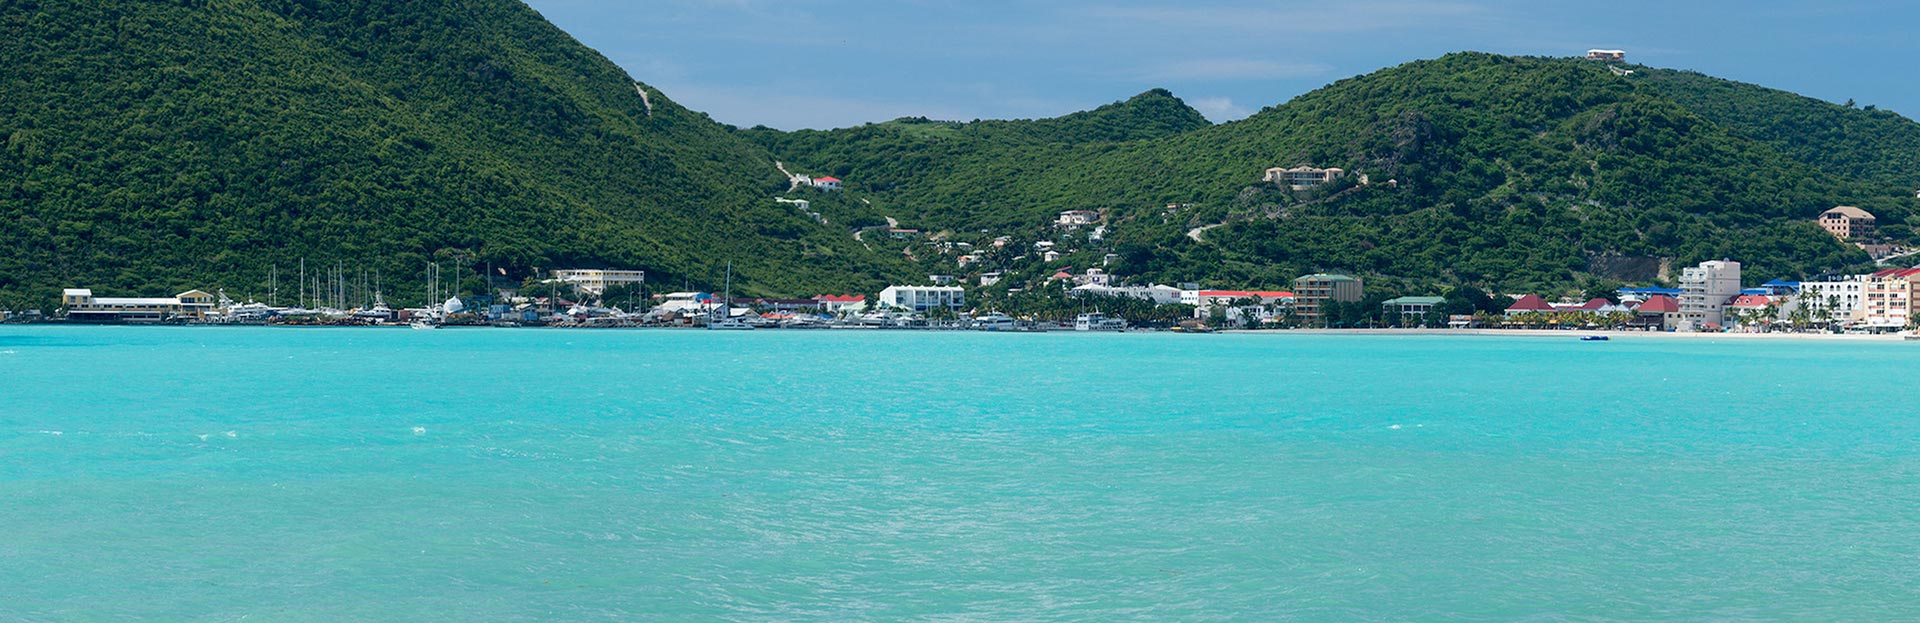 St Maarten Island